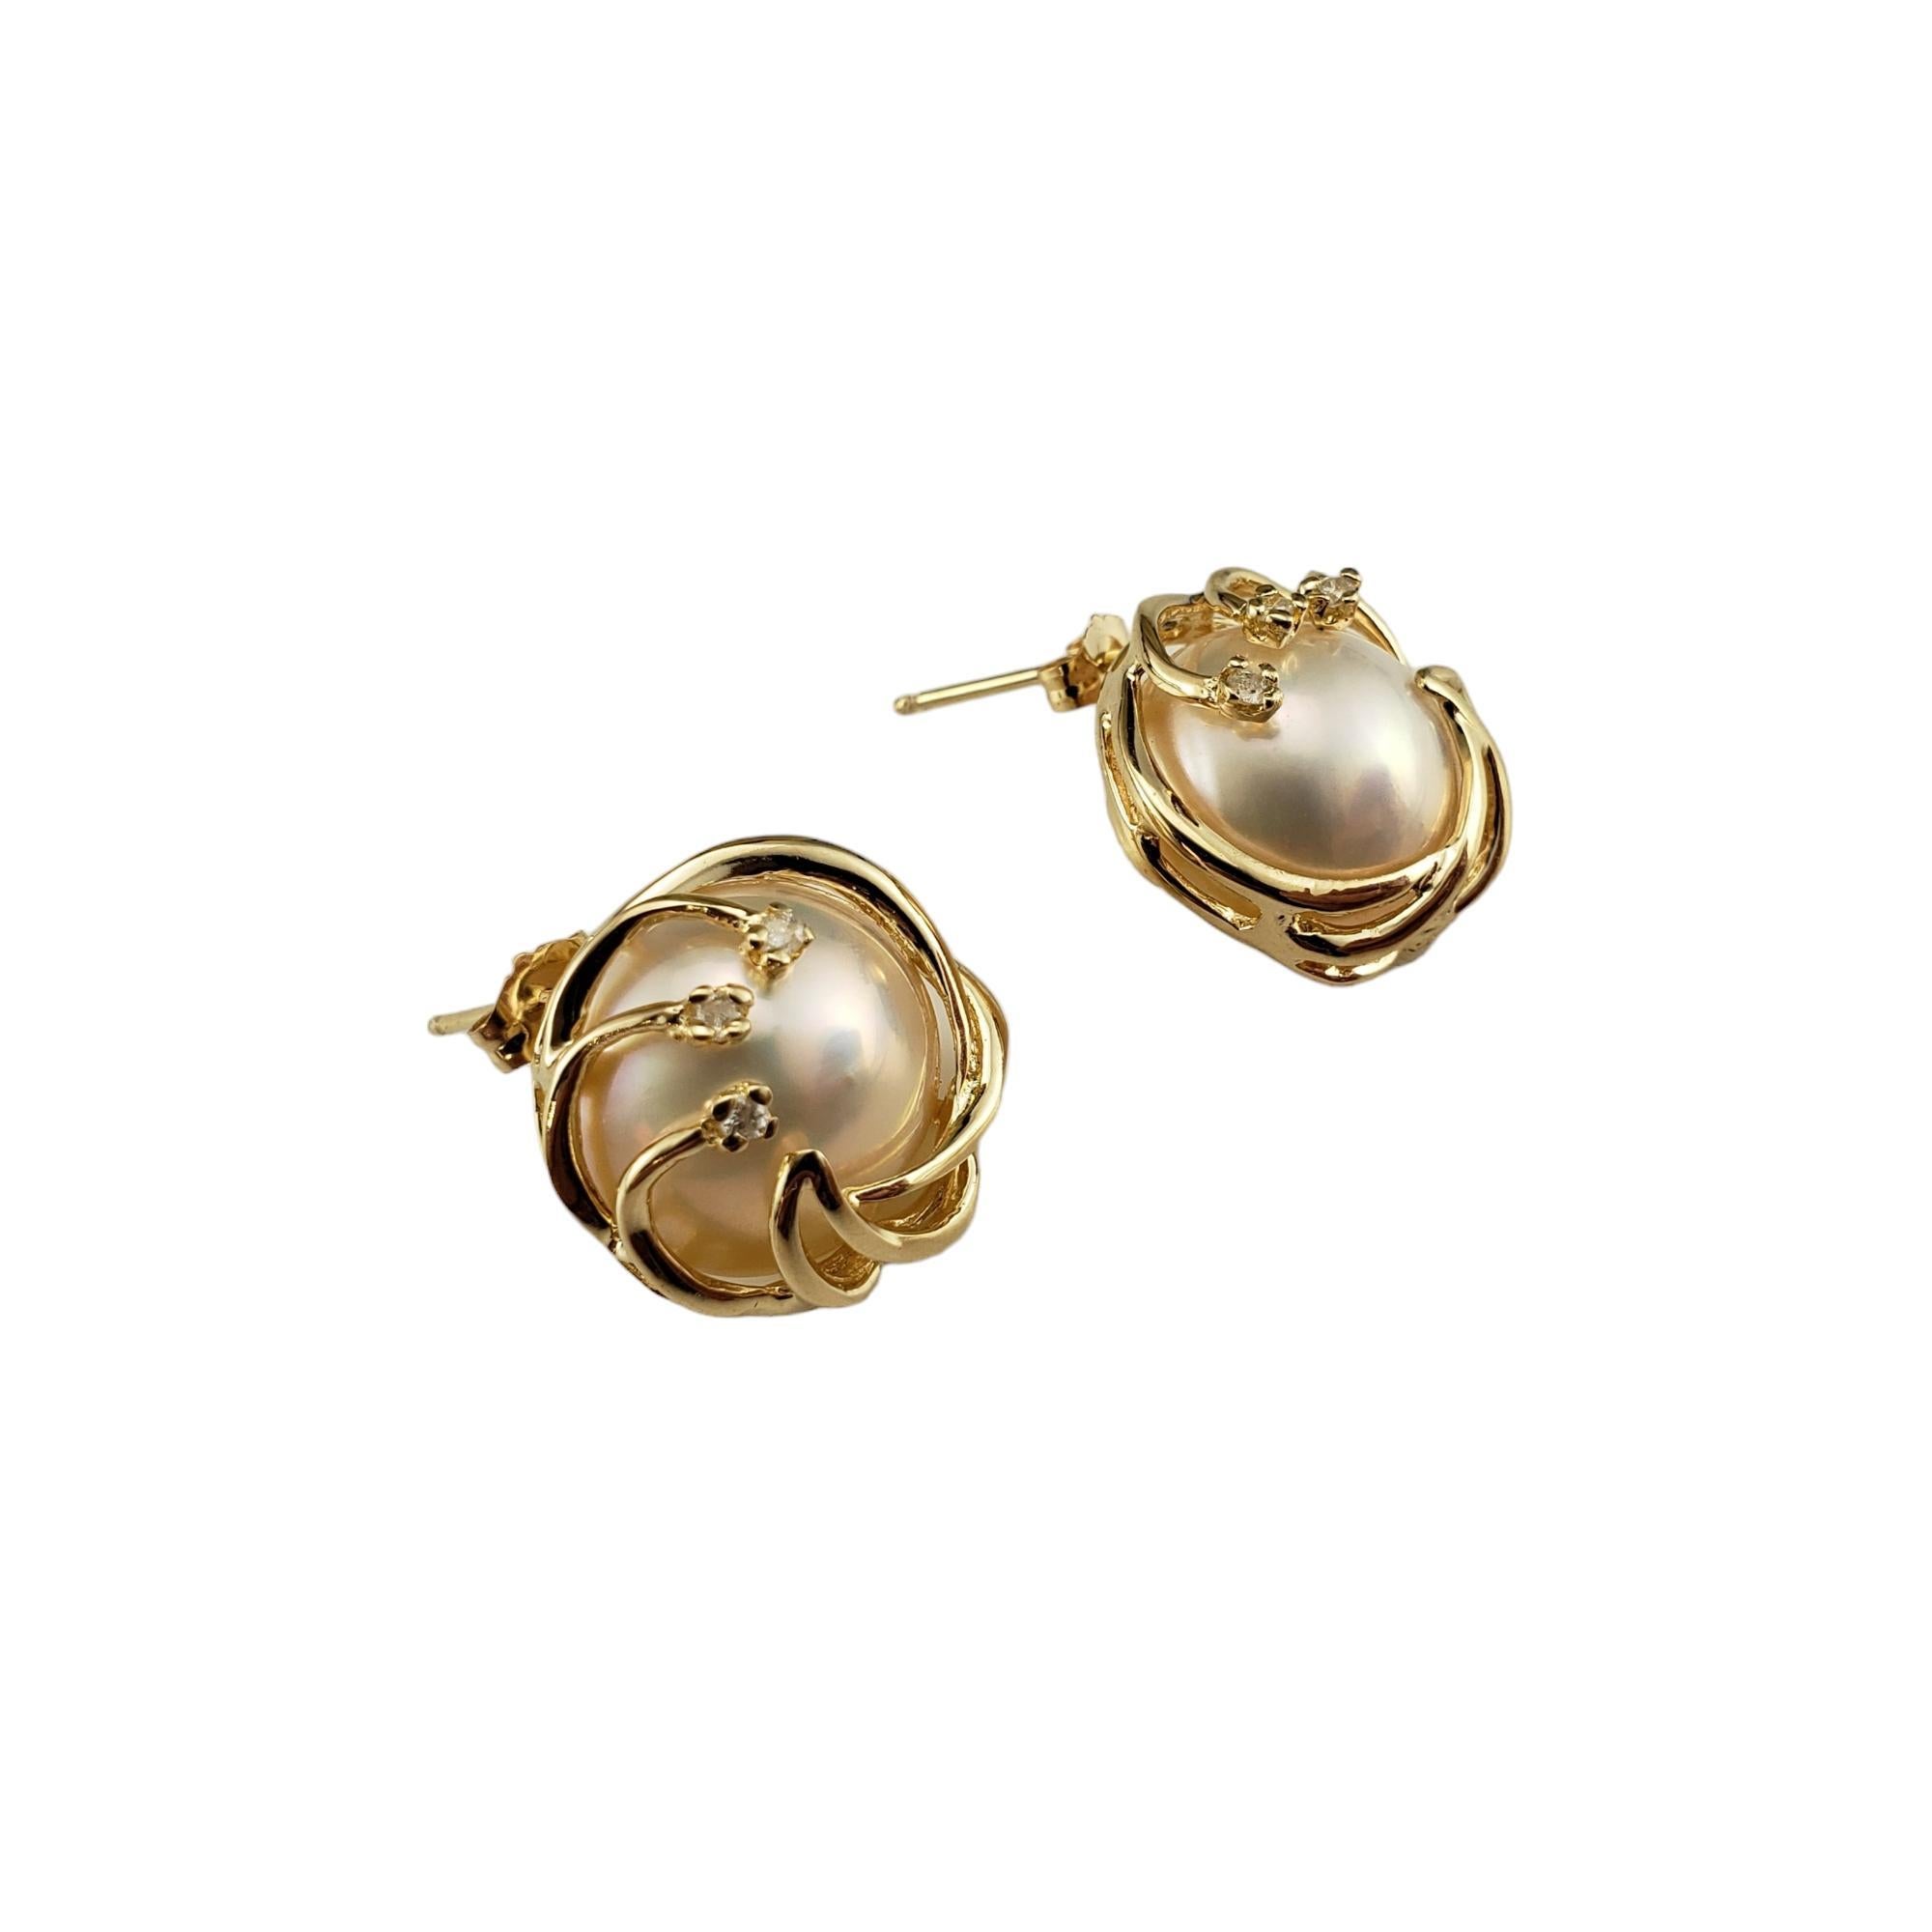 14 Karat Gelbgold Mabe Perlen- und Diamant-Ohrringe-

Diese eleganten Ohrringe sind mit je einer Mabe-Perle und drei runden Diamanten im Einzelschliff in klassischem 14-karätigem Gelbgold gefasst.  Push-Back-Verschlüsse.

Passender Ring: